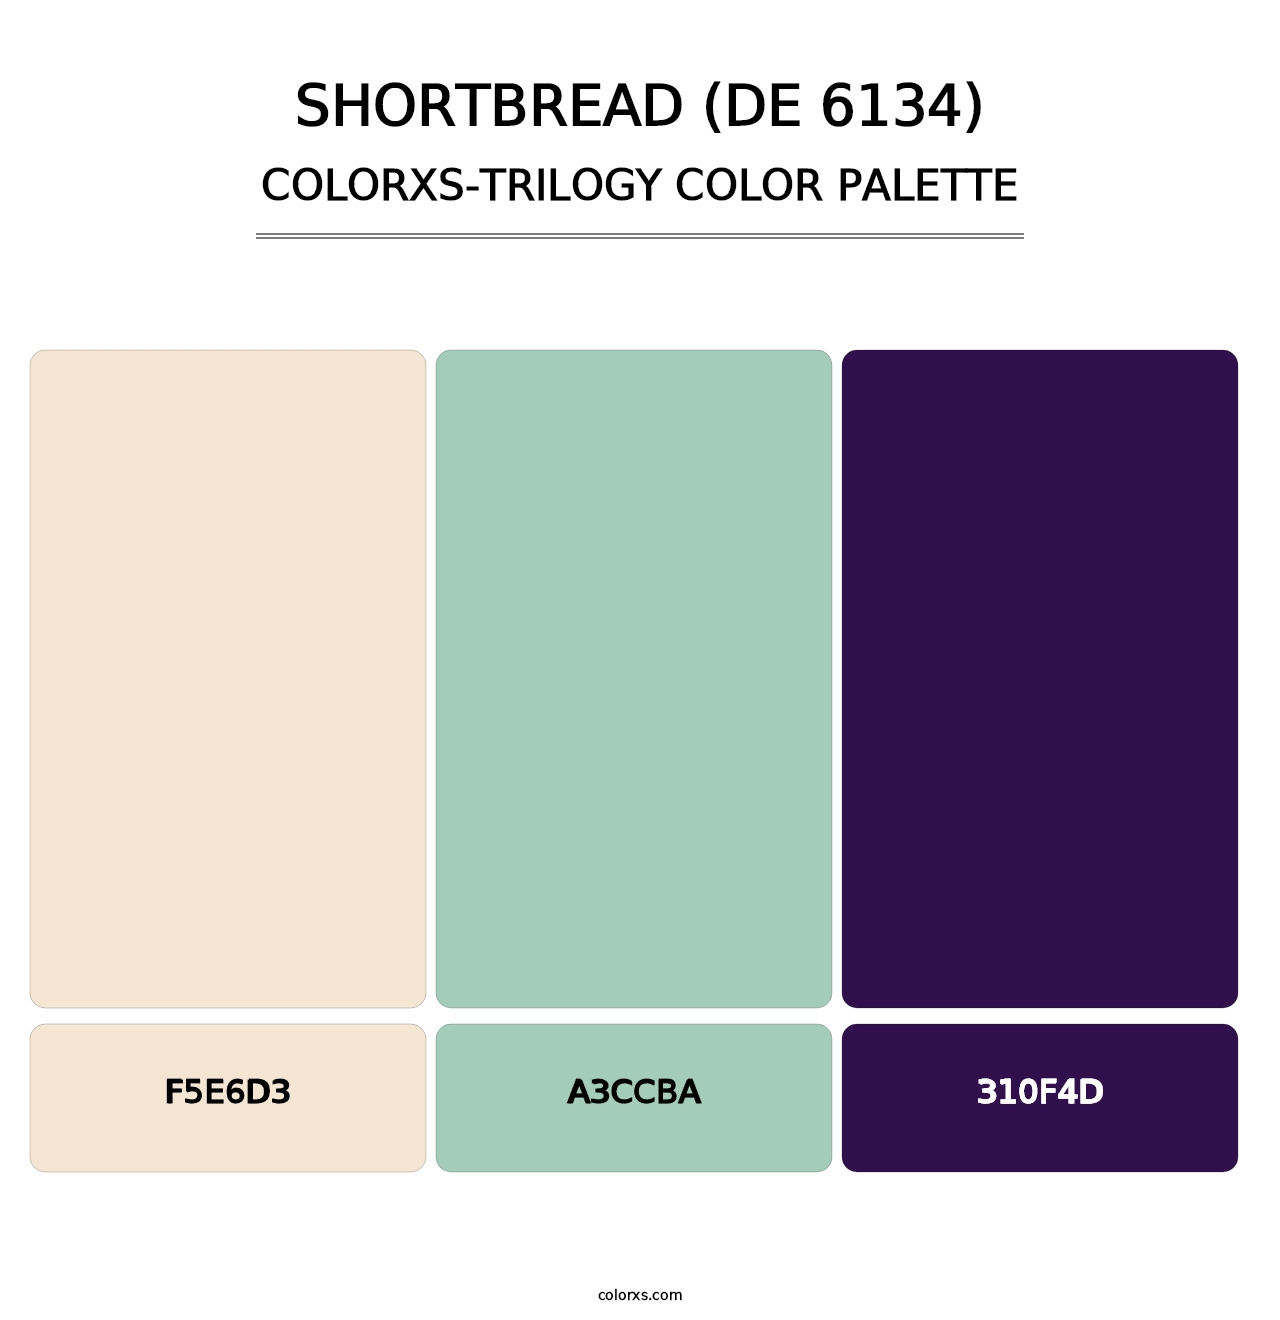 Shortbread (DE 6134) - Colorxs Trilogy Palette